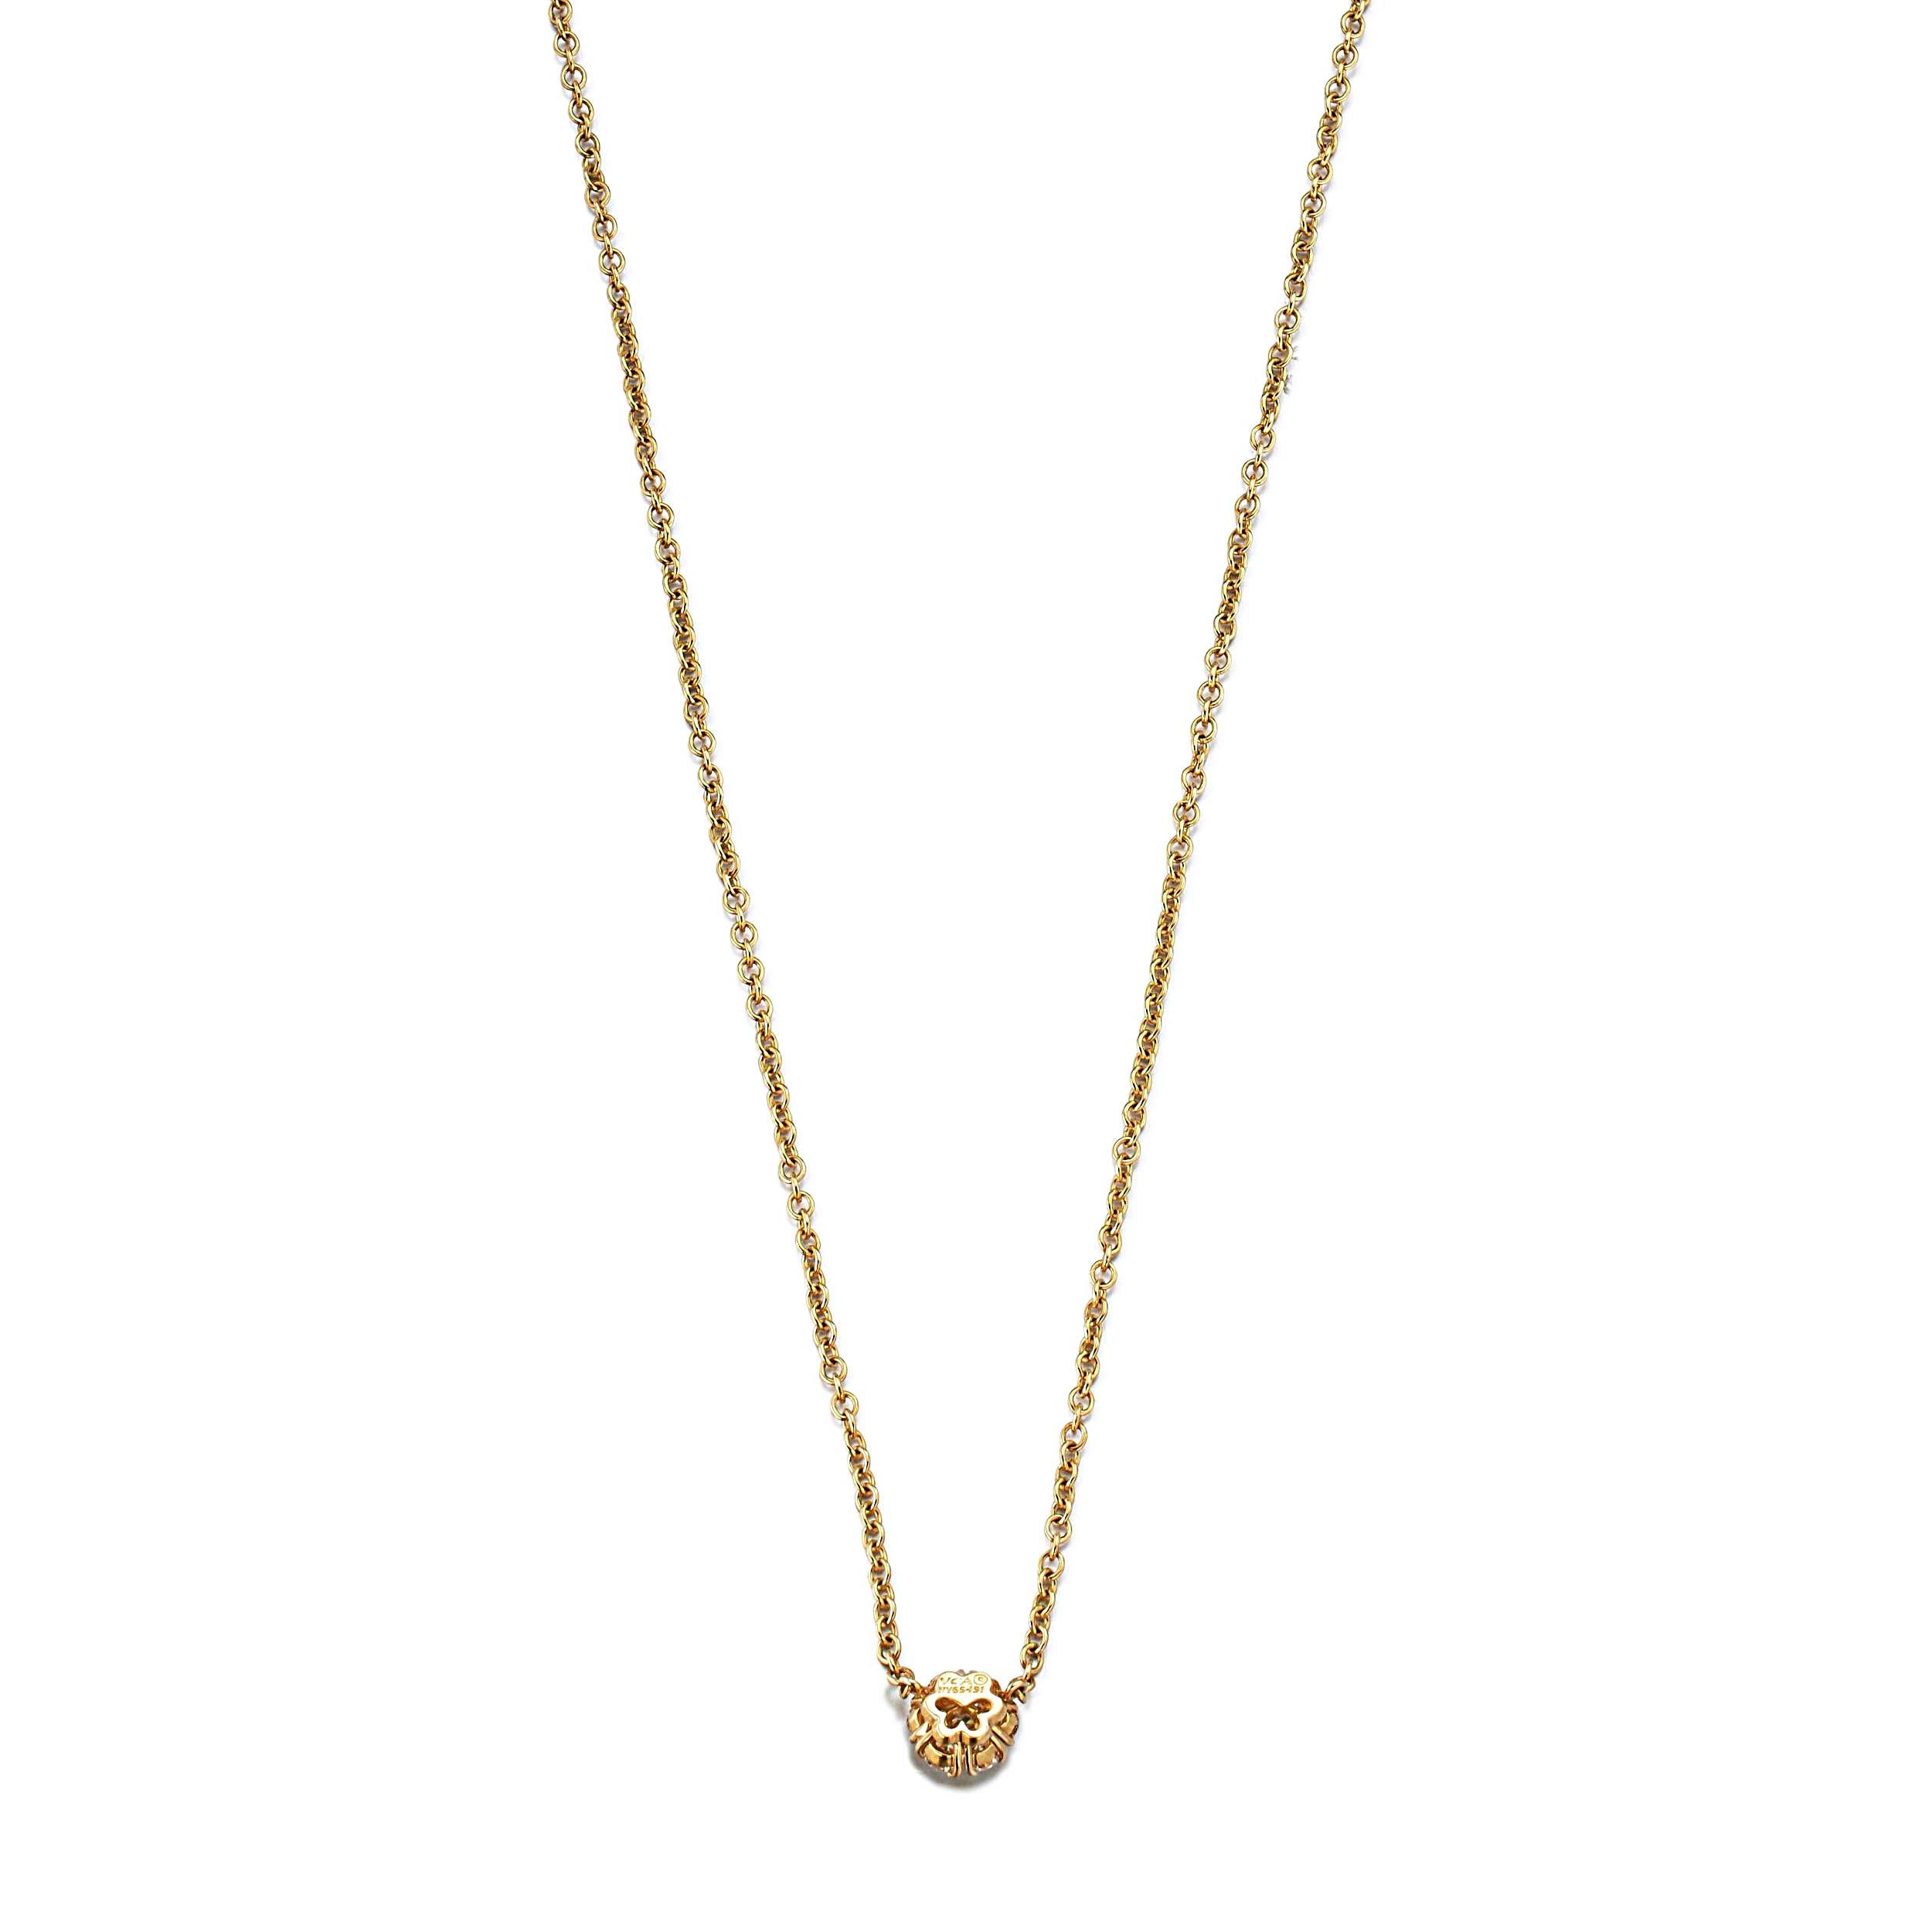 Le collier pendentif en or jaune à diamants Fleurette de Van Cleef & Arpels est une incarnation de la sophistication et de l'élégance intemporelle, reflétant l'engagement de la marque en faveur de la beauté et de l'excellence de l'artisanat. Cette